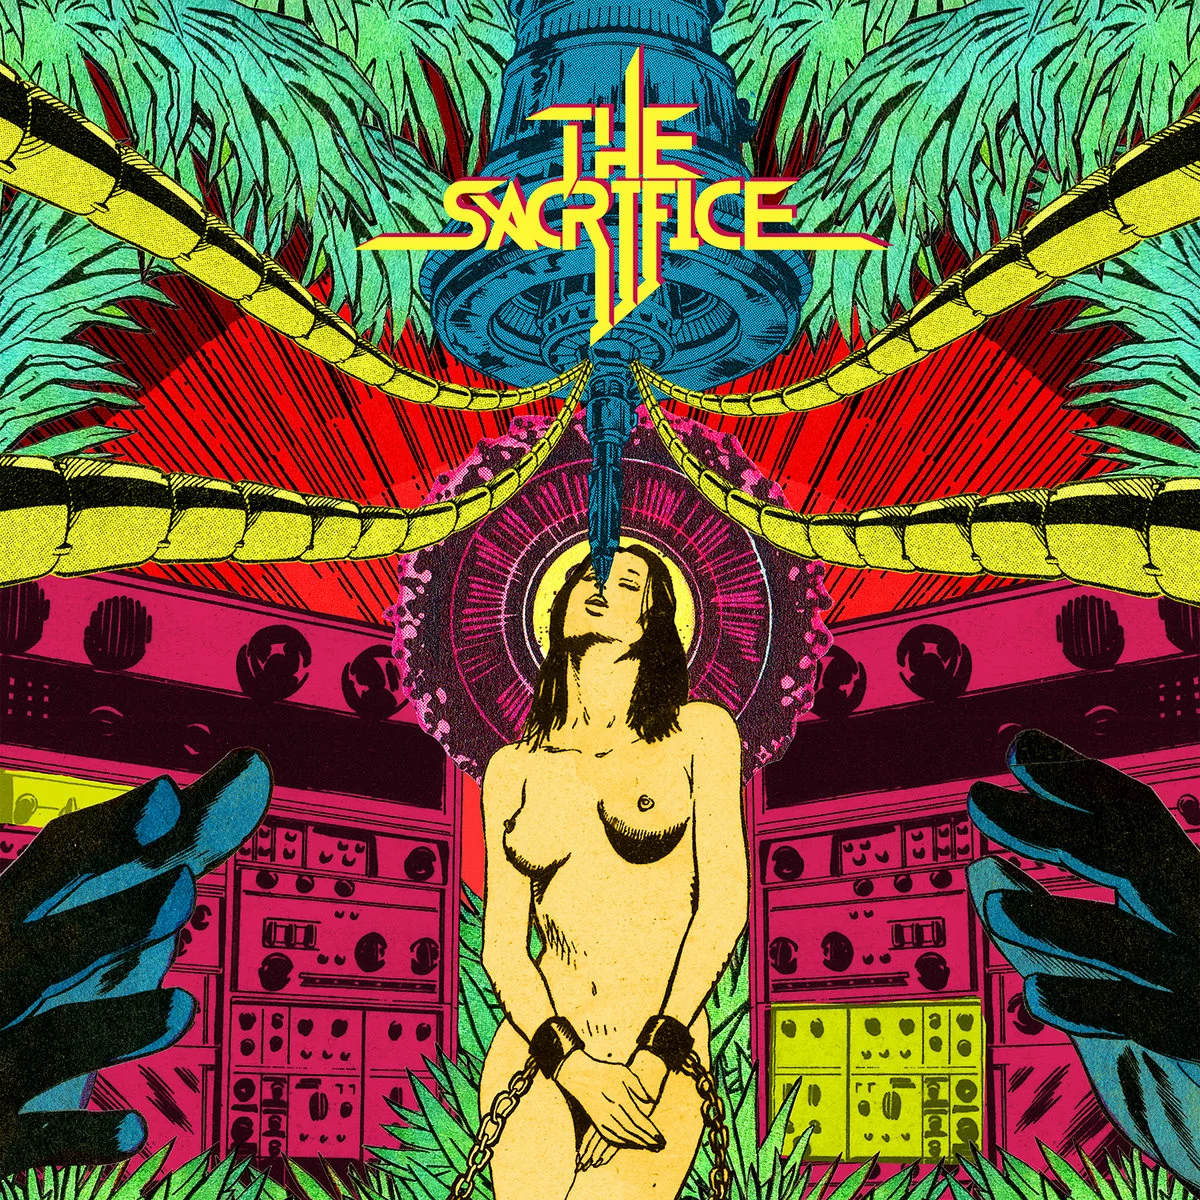 THE SACRIFICE - The Sacrifice [VIOLET LP]